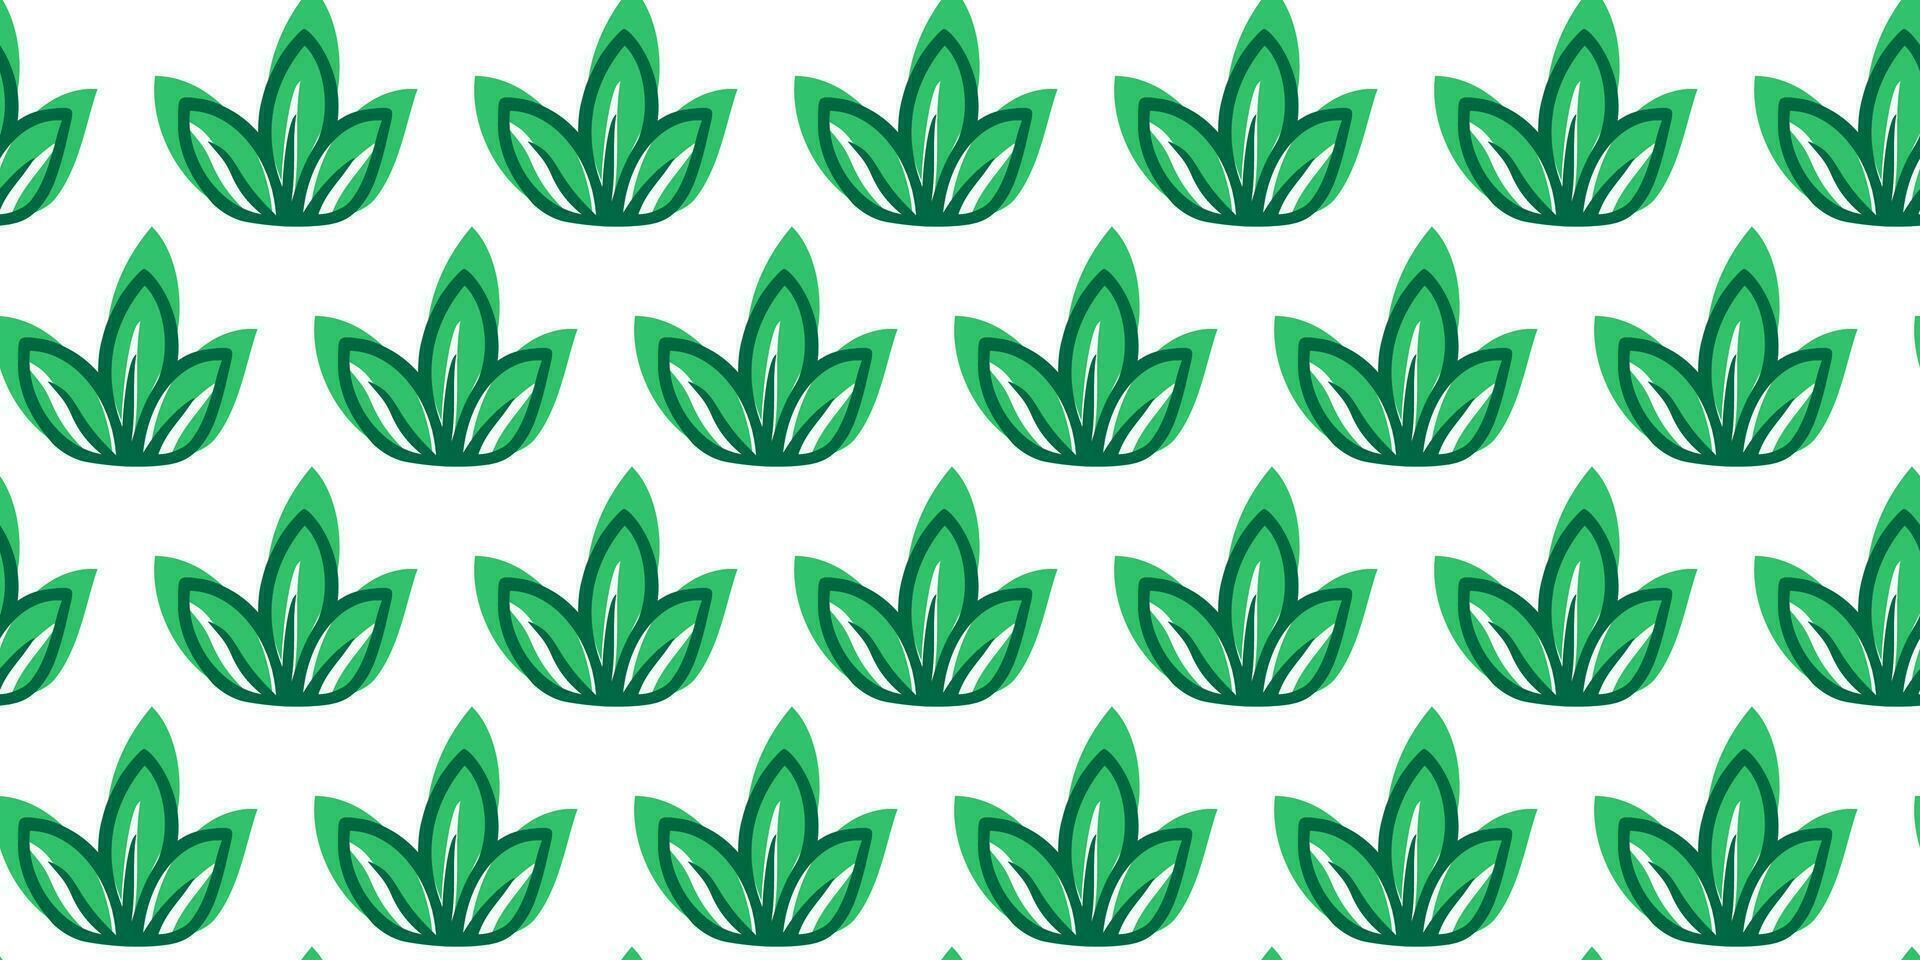 Grün frisch Gras nahtlos Muster. Vektor Gekritzel Pflanze Hintergrund. Frühling Microgreens Hintergrund. mikrogrün Design zum Verpackung Papier oder Stoff Swatch